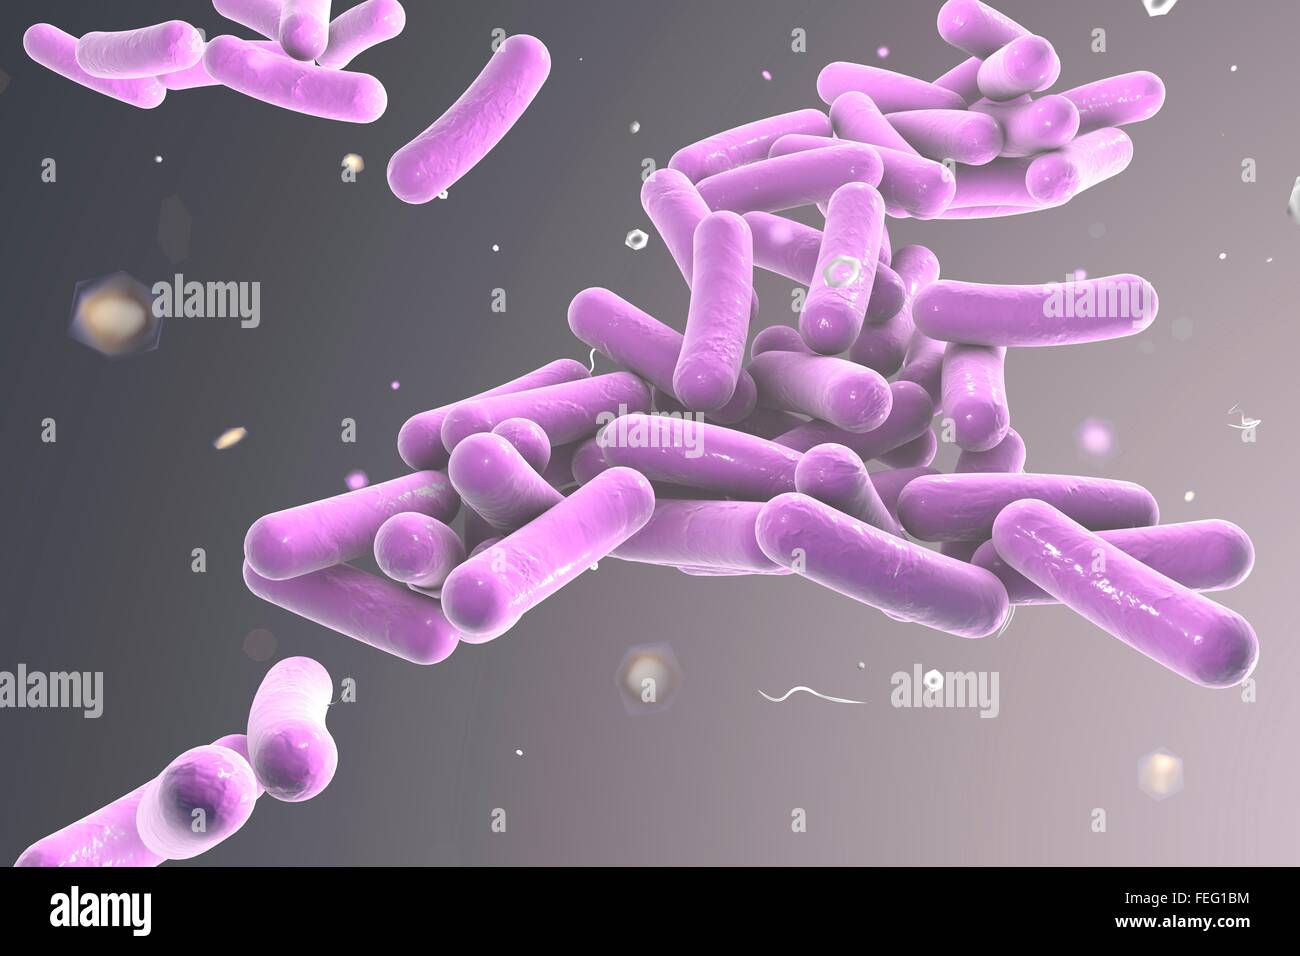 Illustration von stäbchenförmigen Bakterien. Stäbchenförmige Bakterien zählen Escherichia coli, Salmonellen, Shigellen, Legionellen, Stockfoto